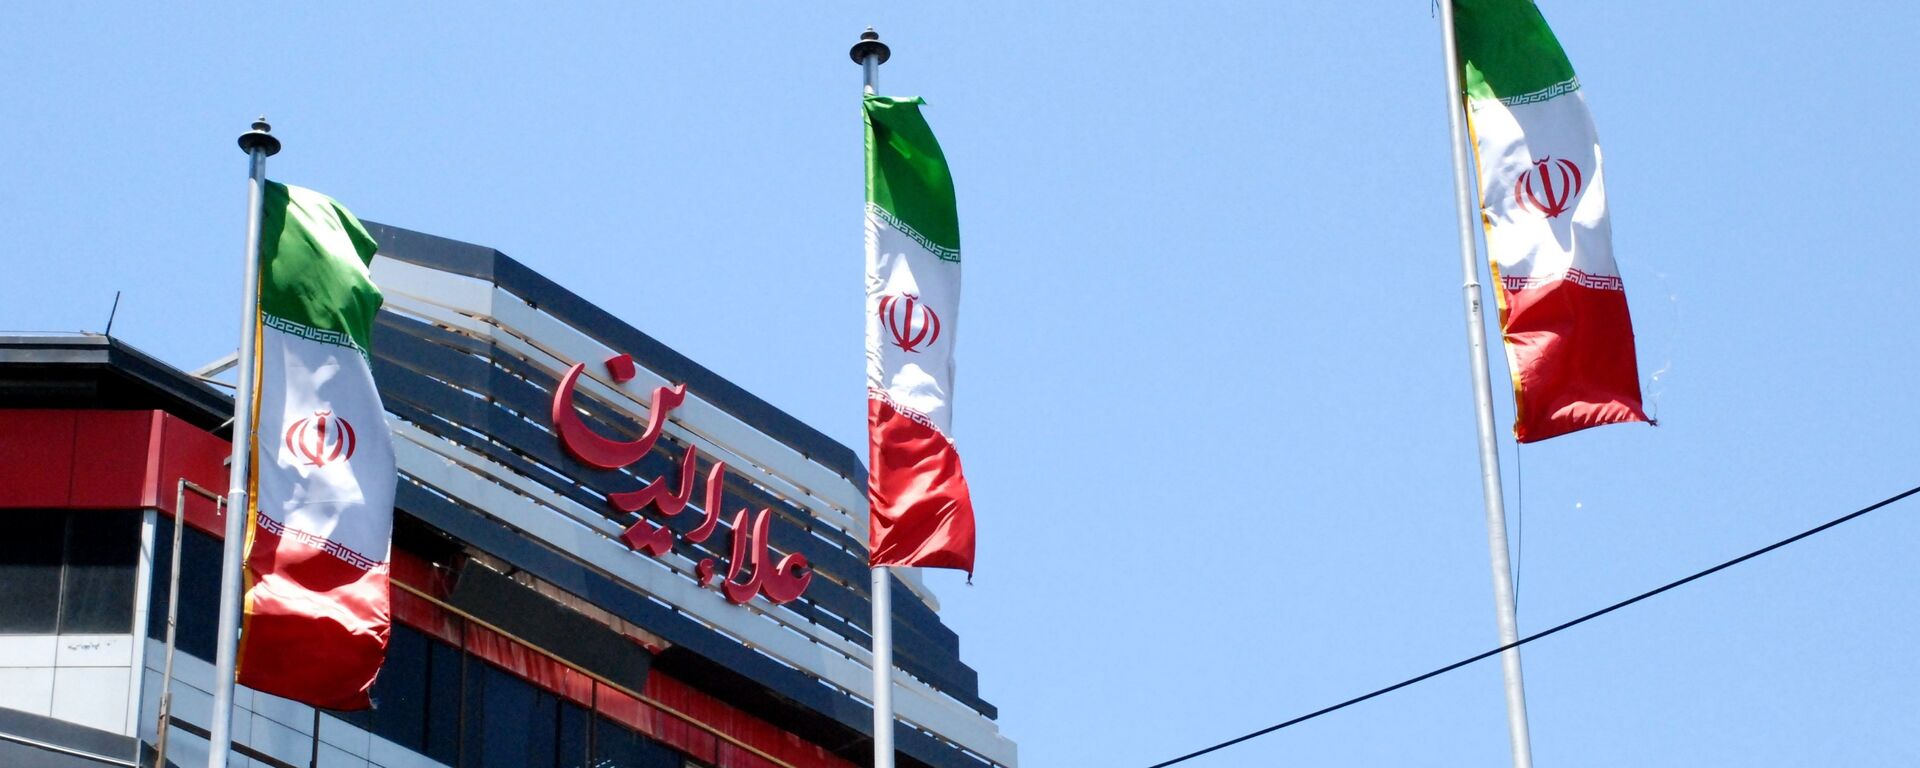 Флаги Ирана на одной из улиц Тегерана - Sputnik Тоҷикистон, 1920, 13.09.2020